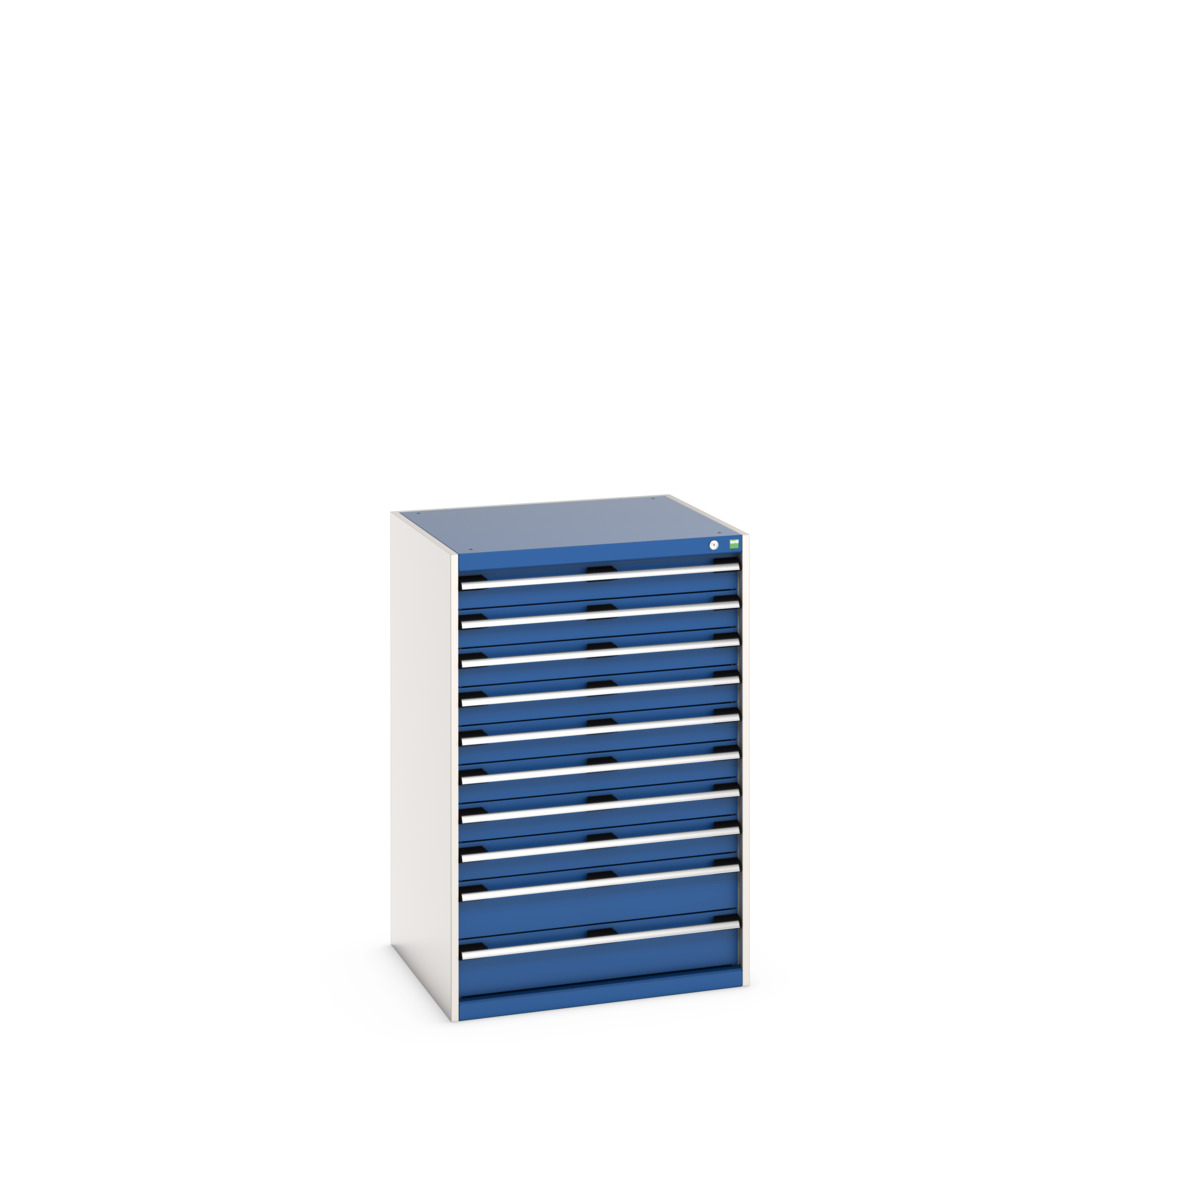 40028037.11V - cubio drawer cabinet